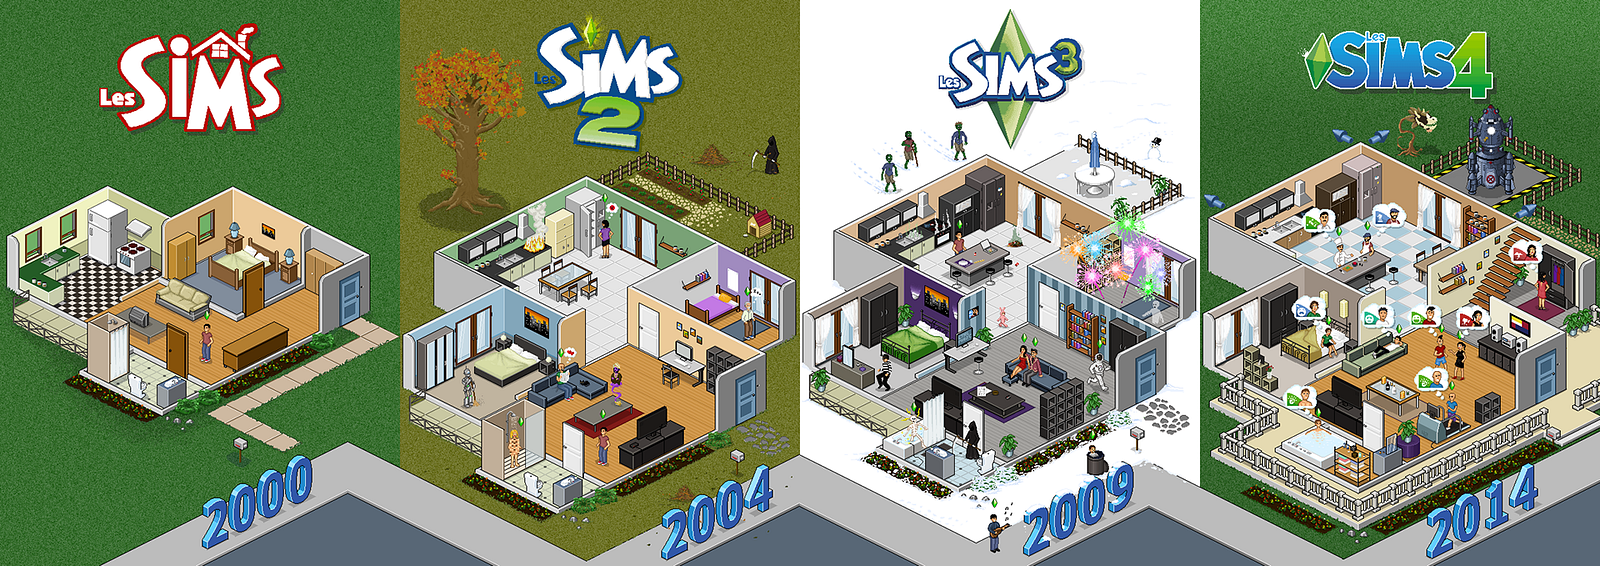 Download 50 The Sims  4  Desain  Rumah  Terunik Tech Desain 